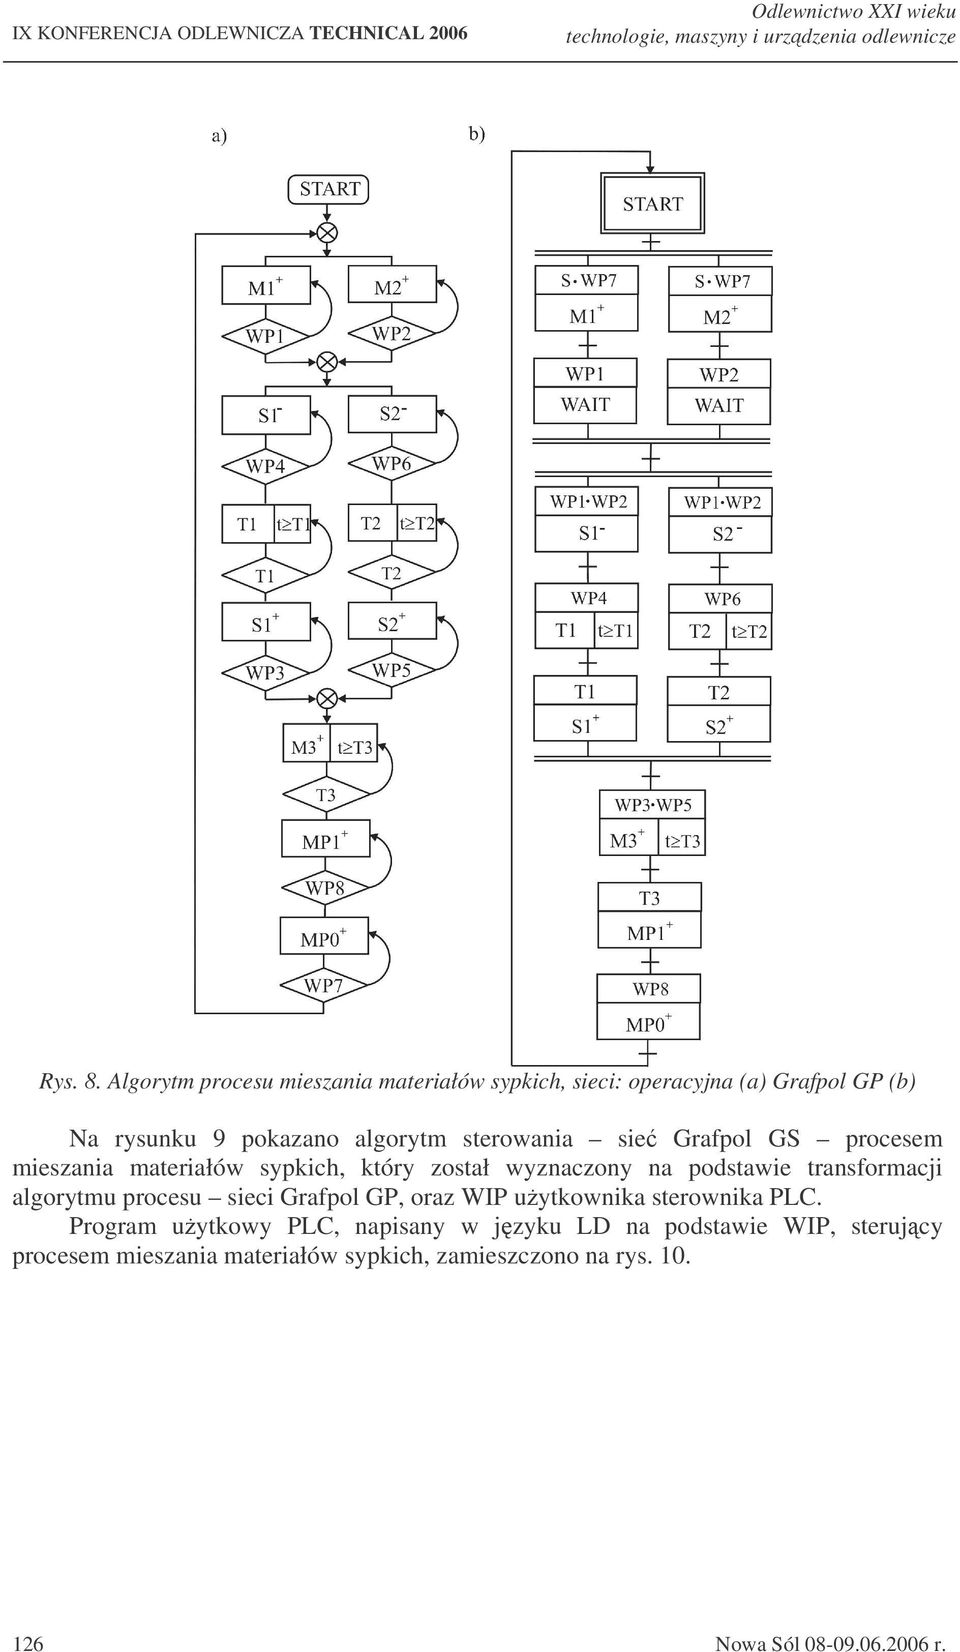 Grafpol GS procesem mieszania materiałów sypkich, który został wyznaczony na podstawie transformacji algorytmu procesu sieci Grafpol